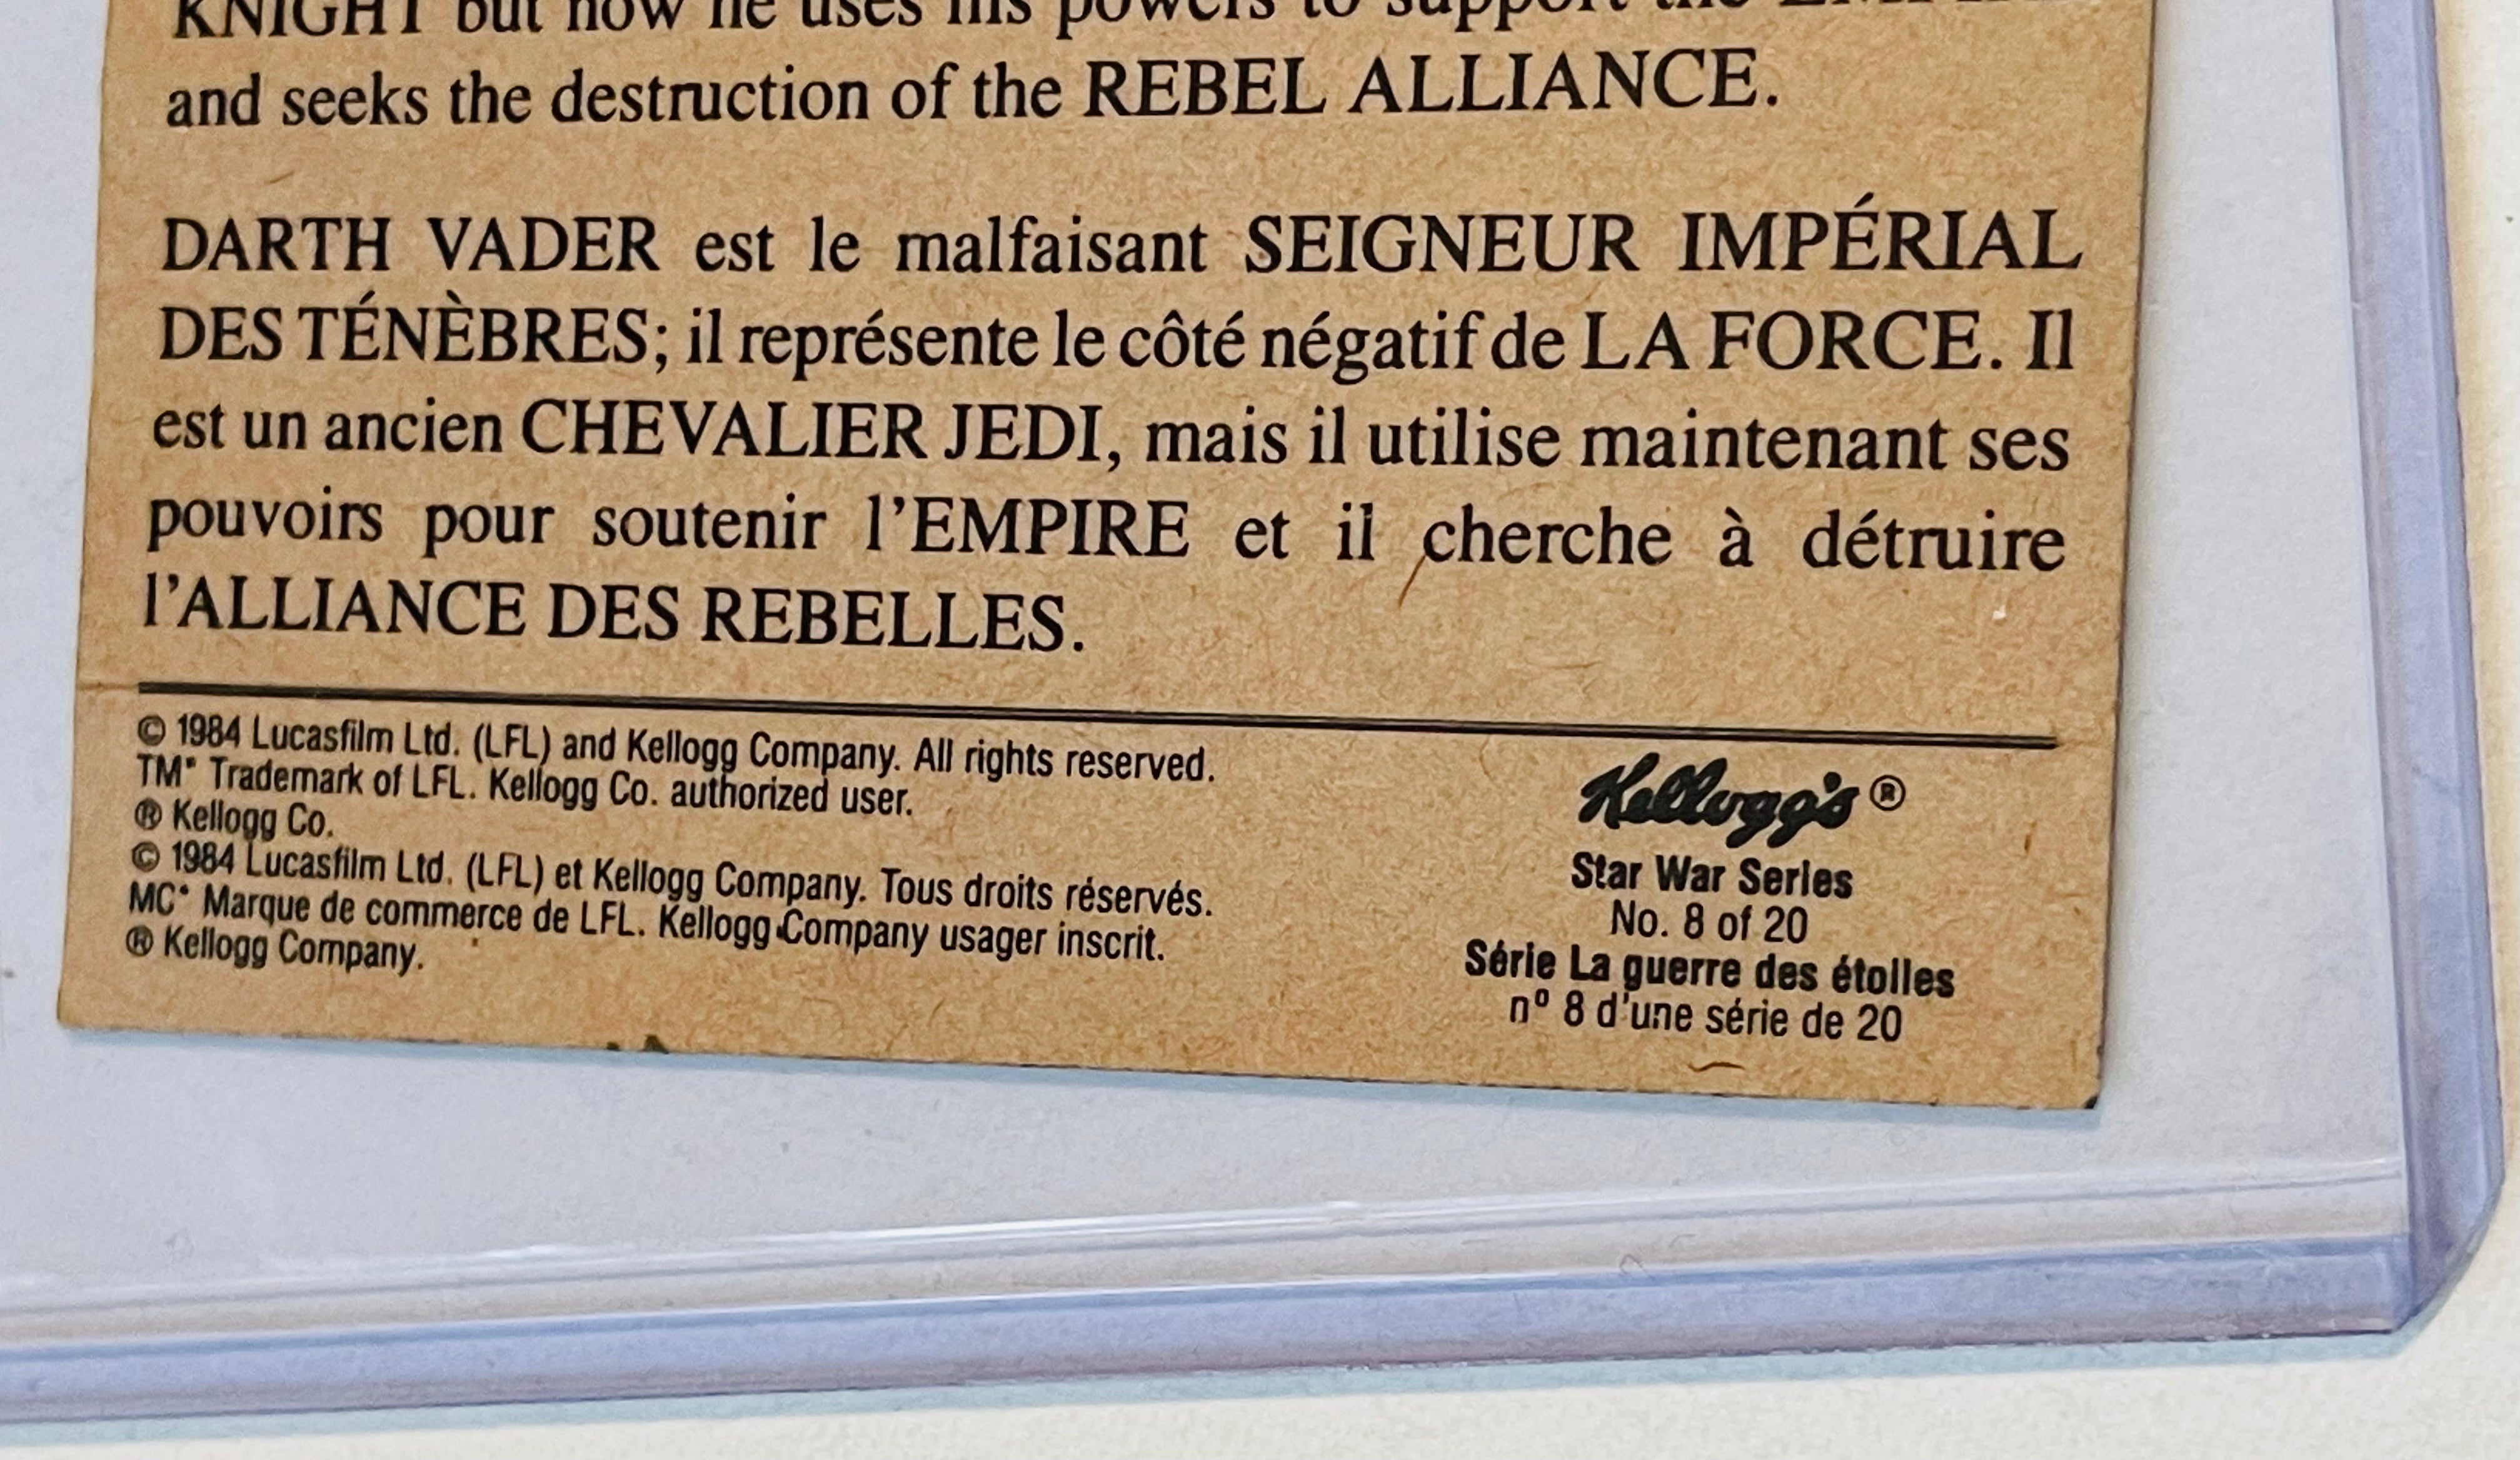 Star Wars Kellogg’s Darth Vader rare French card 1984